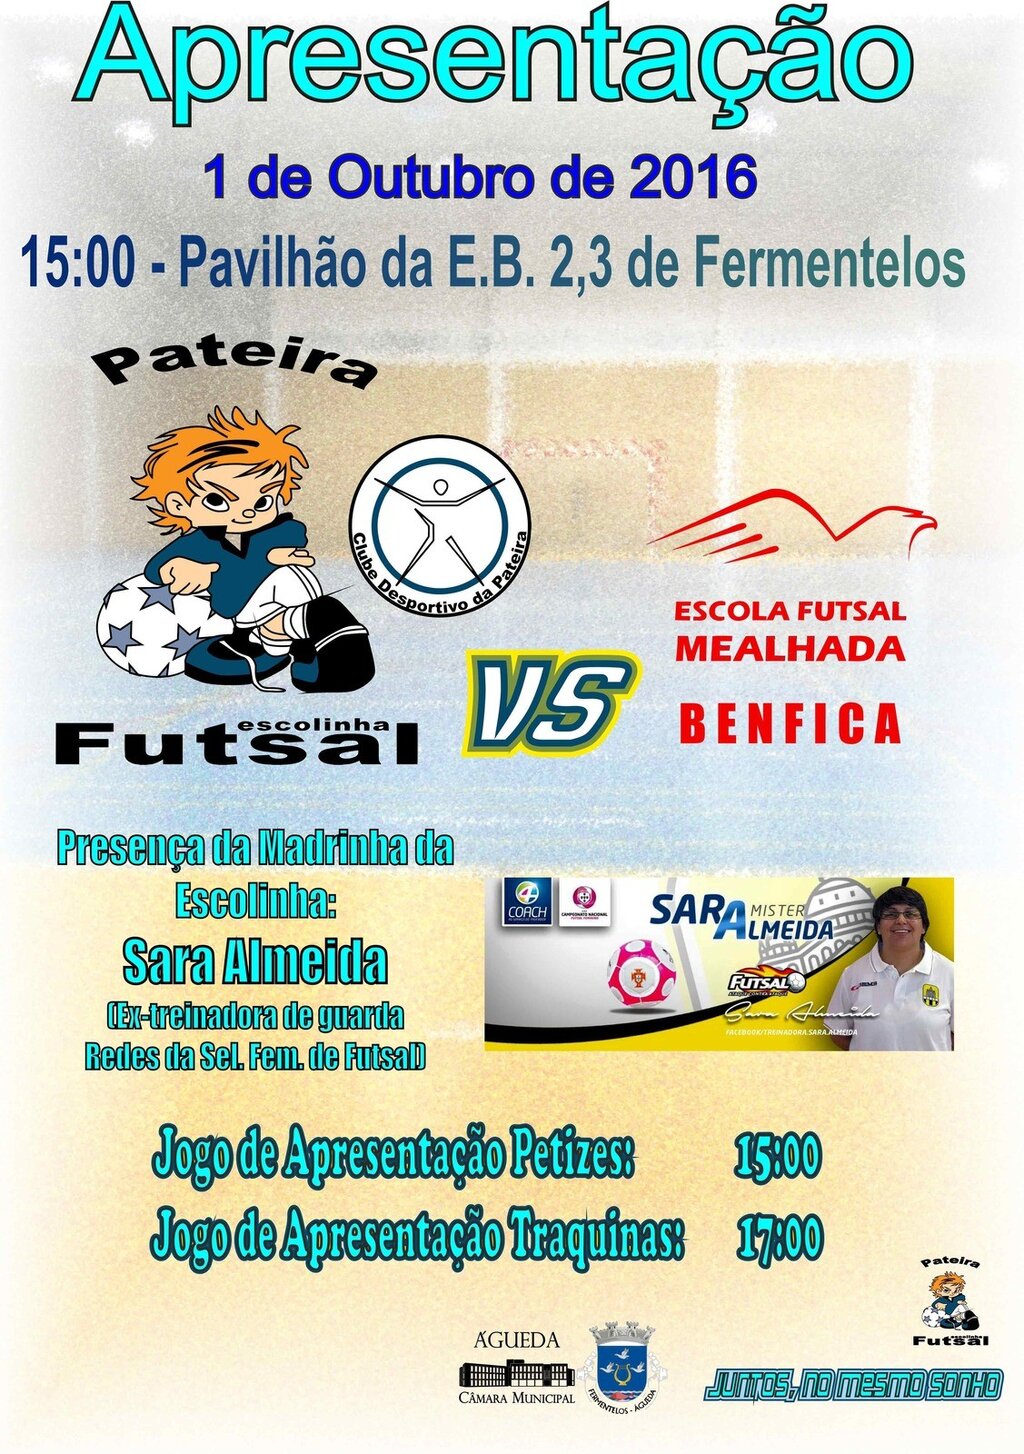 Abertura Oficial da Escolinha de Futsal da Pateira - Clube Desportivo da Pateira (Fermentelos)